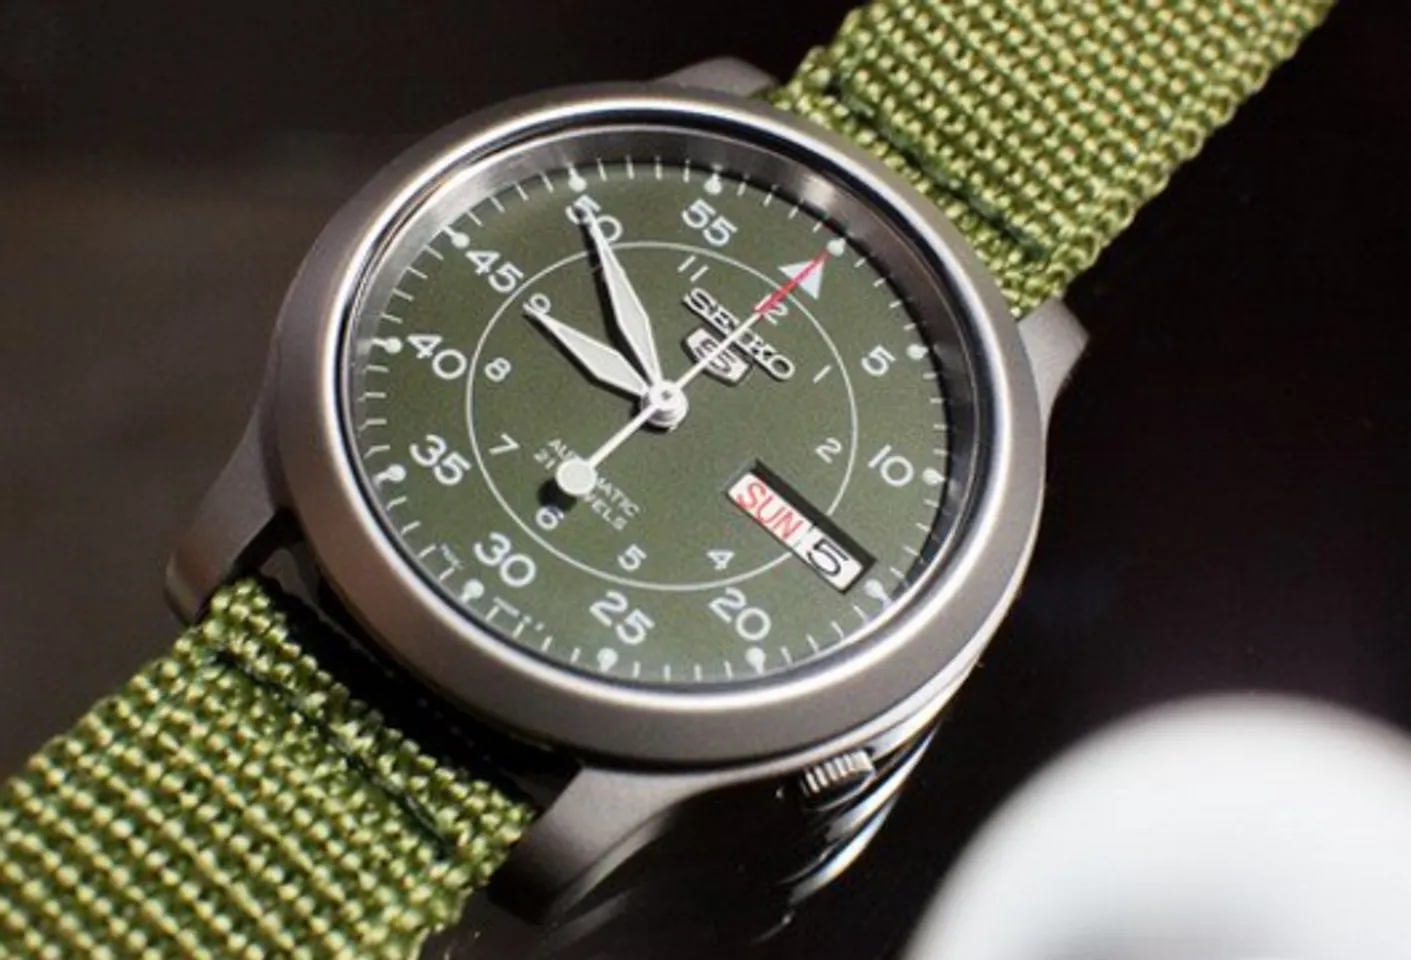 Đồng hồ Seiko 5 quân đội SNK805 màu xanh rêu